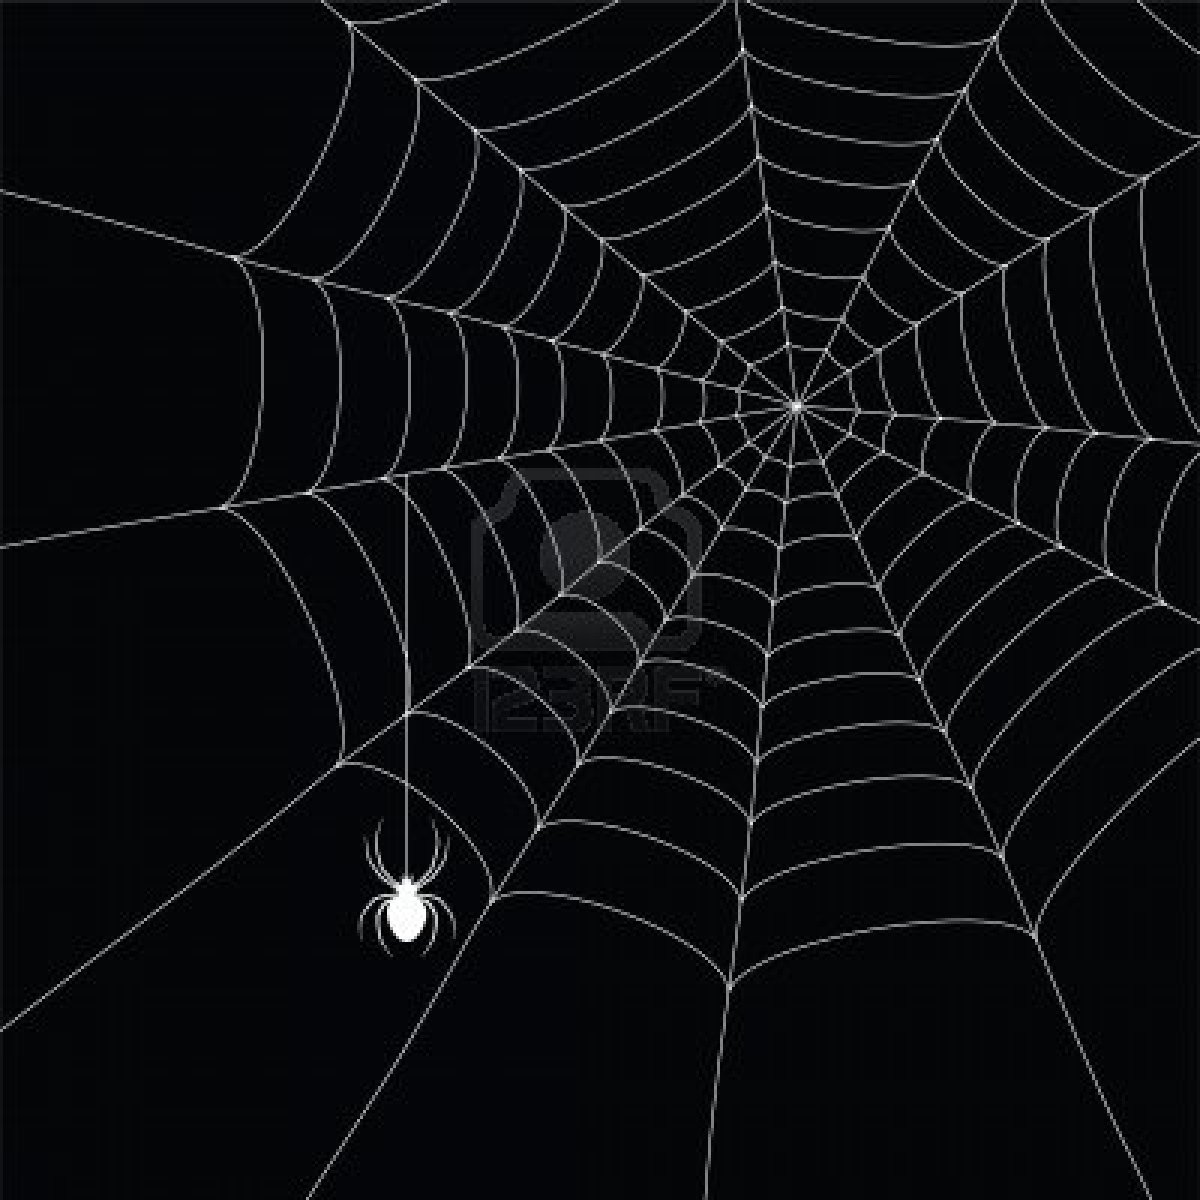 கடவுள் என்றால் என்ன? – 1 7985938-white-spider-and-spider-web-isolated-on-the-black-background